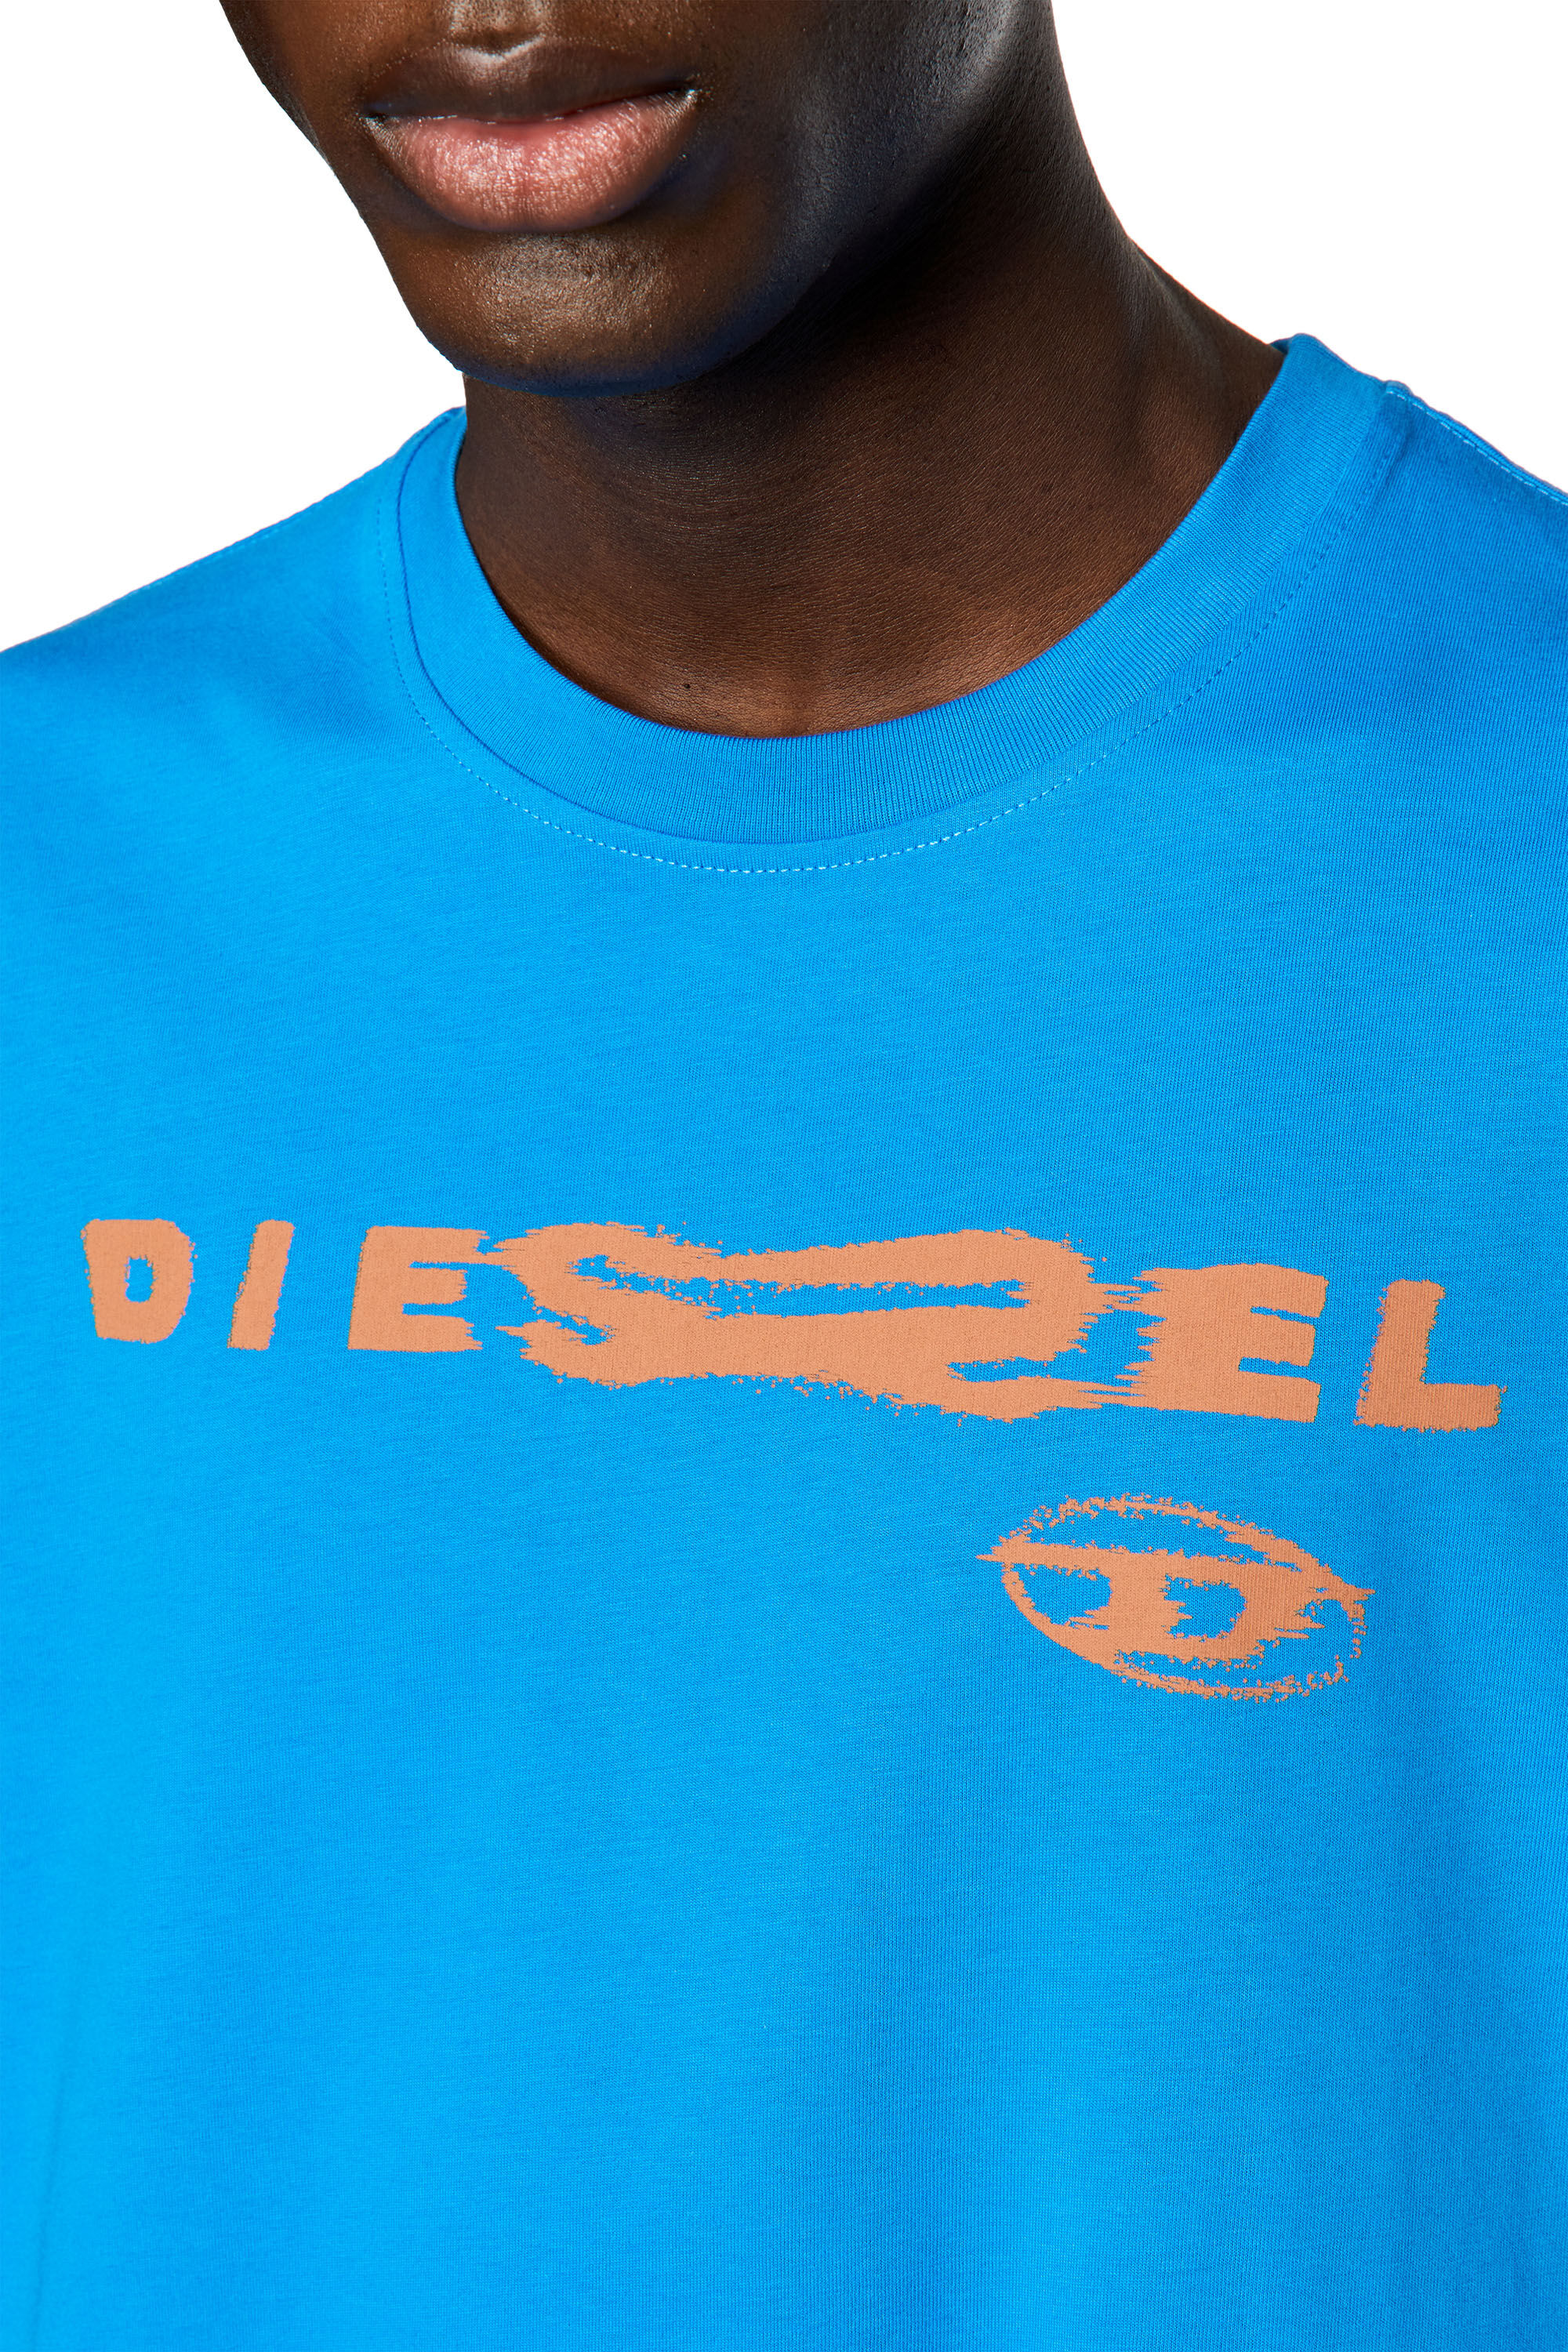 Diesel - T-JUST-G9, Blau - Image 5